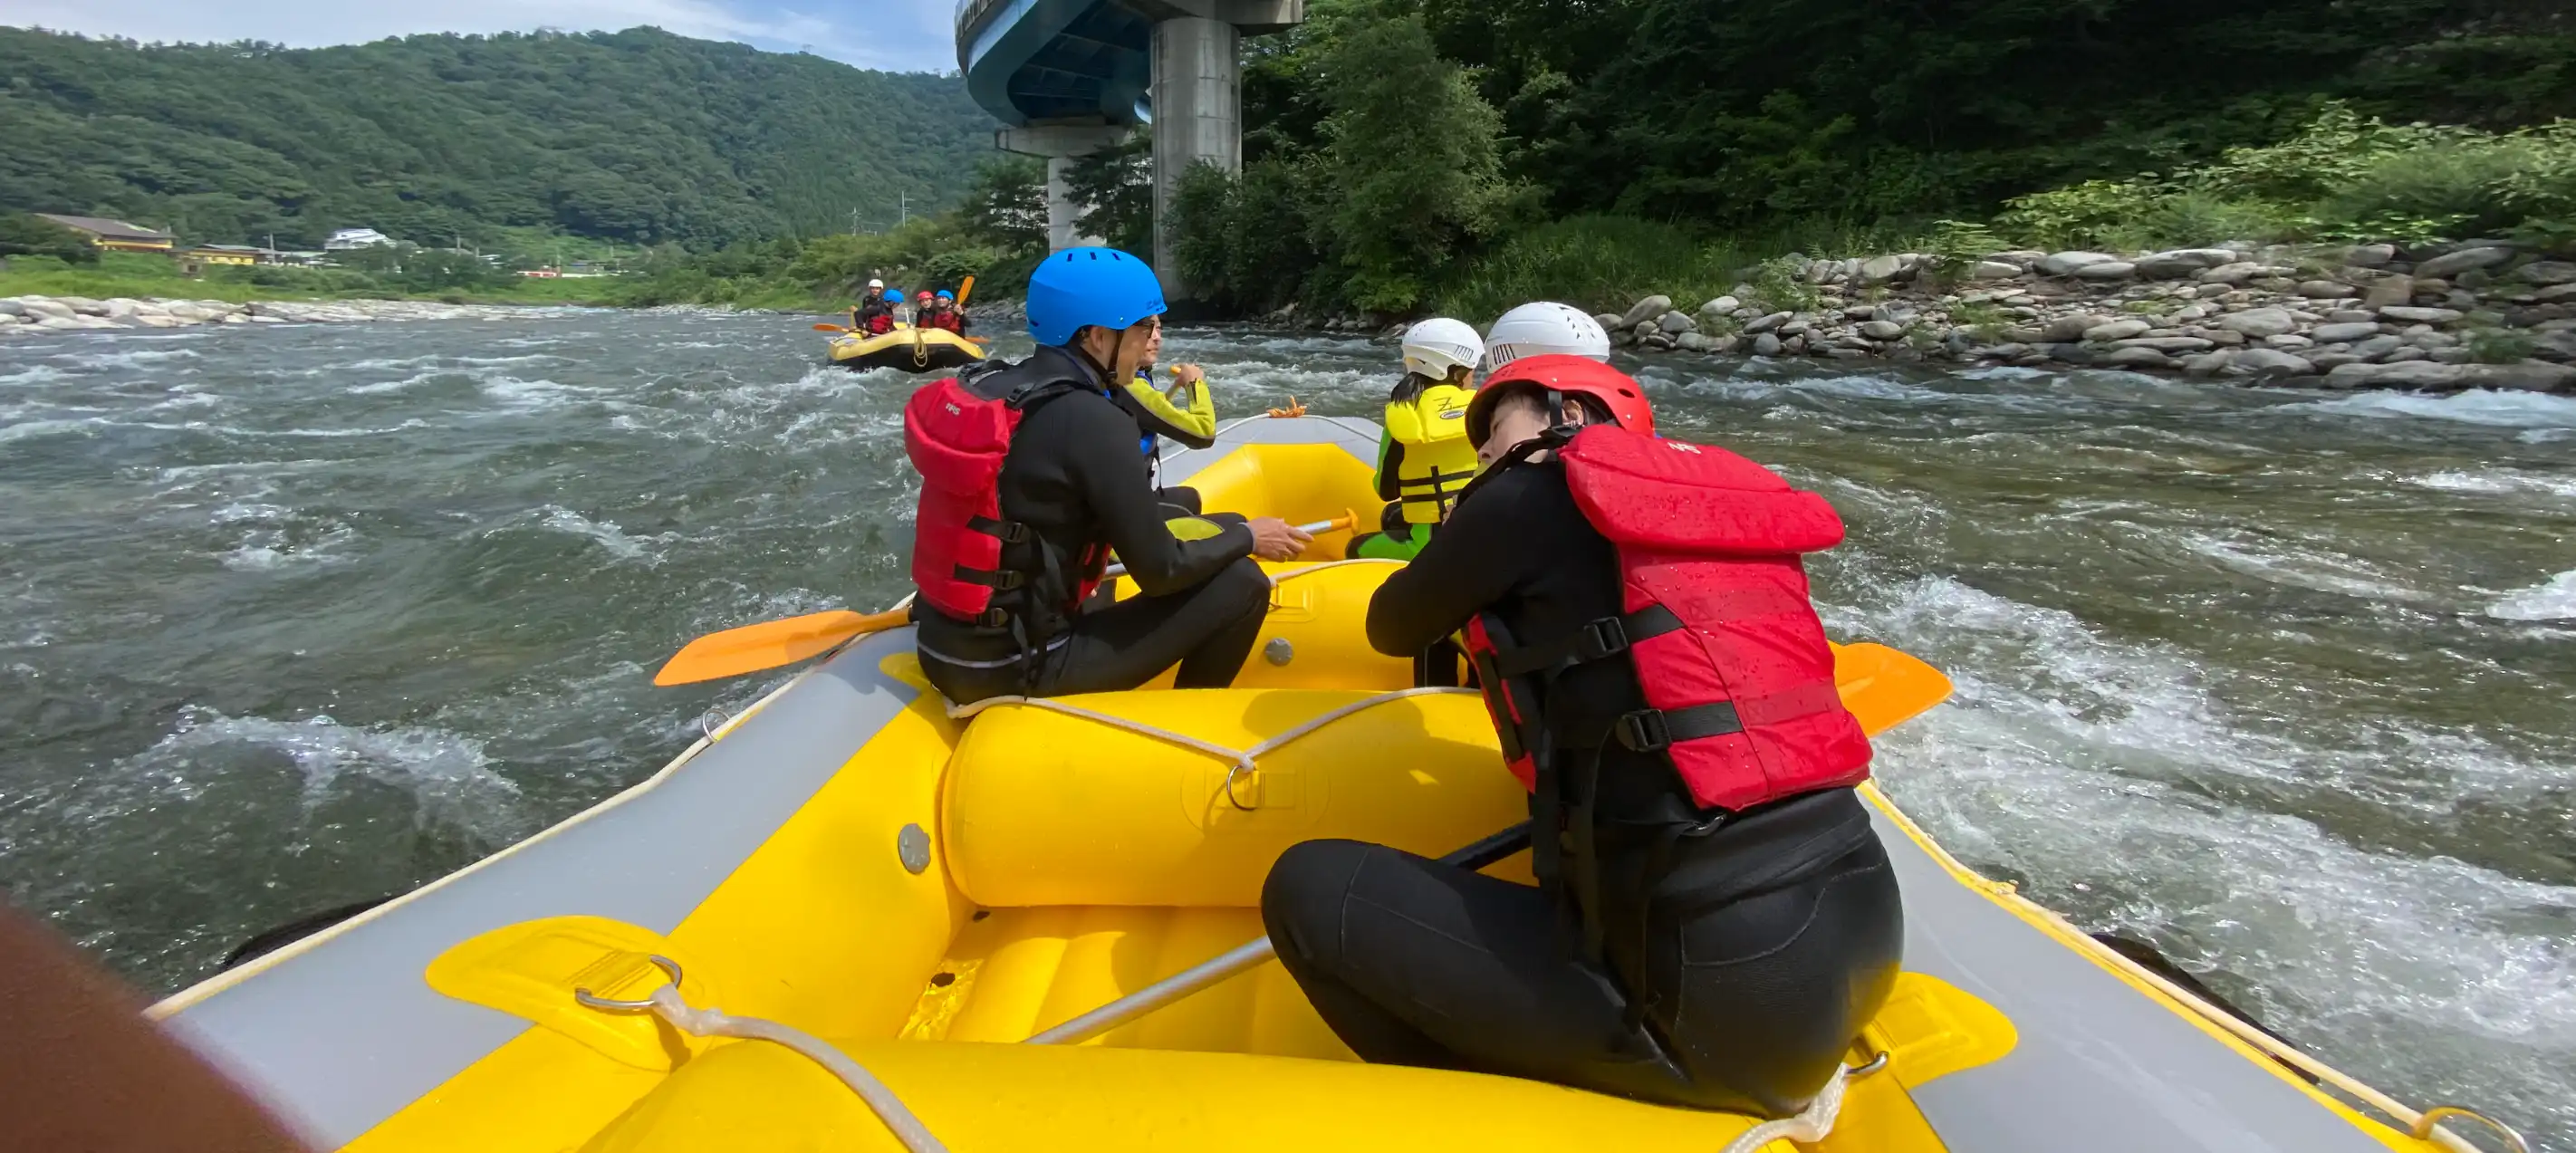 Rafting in minakami tone river with friends, みなかみトーン川で友達とラフティング,水上ラフティング,みなかみラフティング  